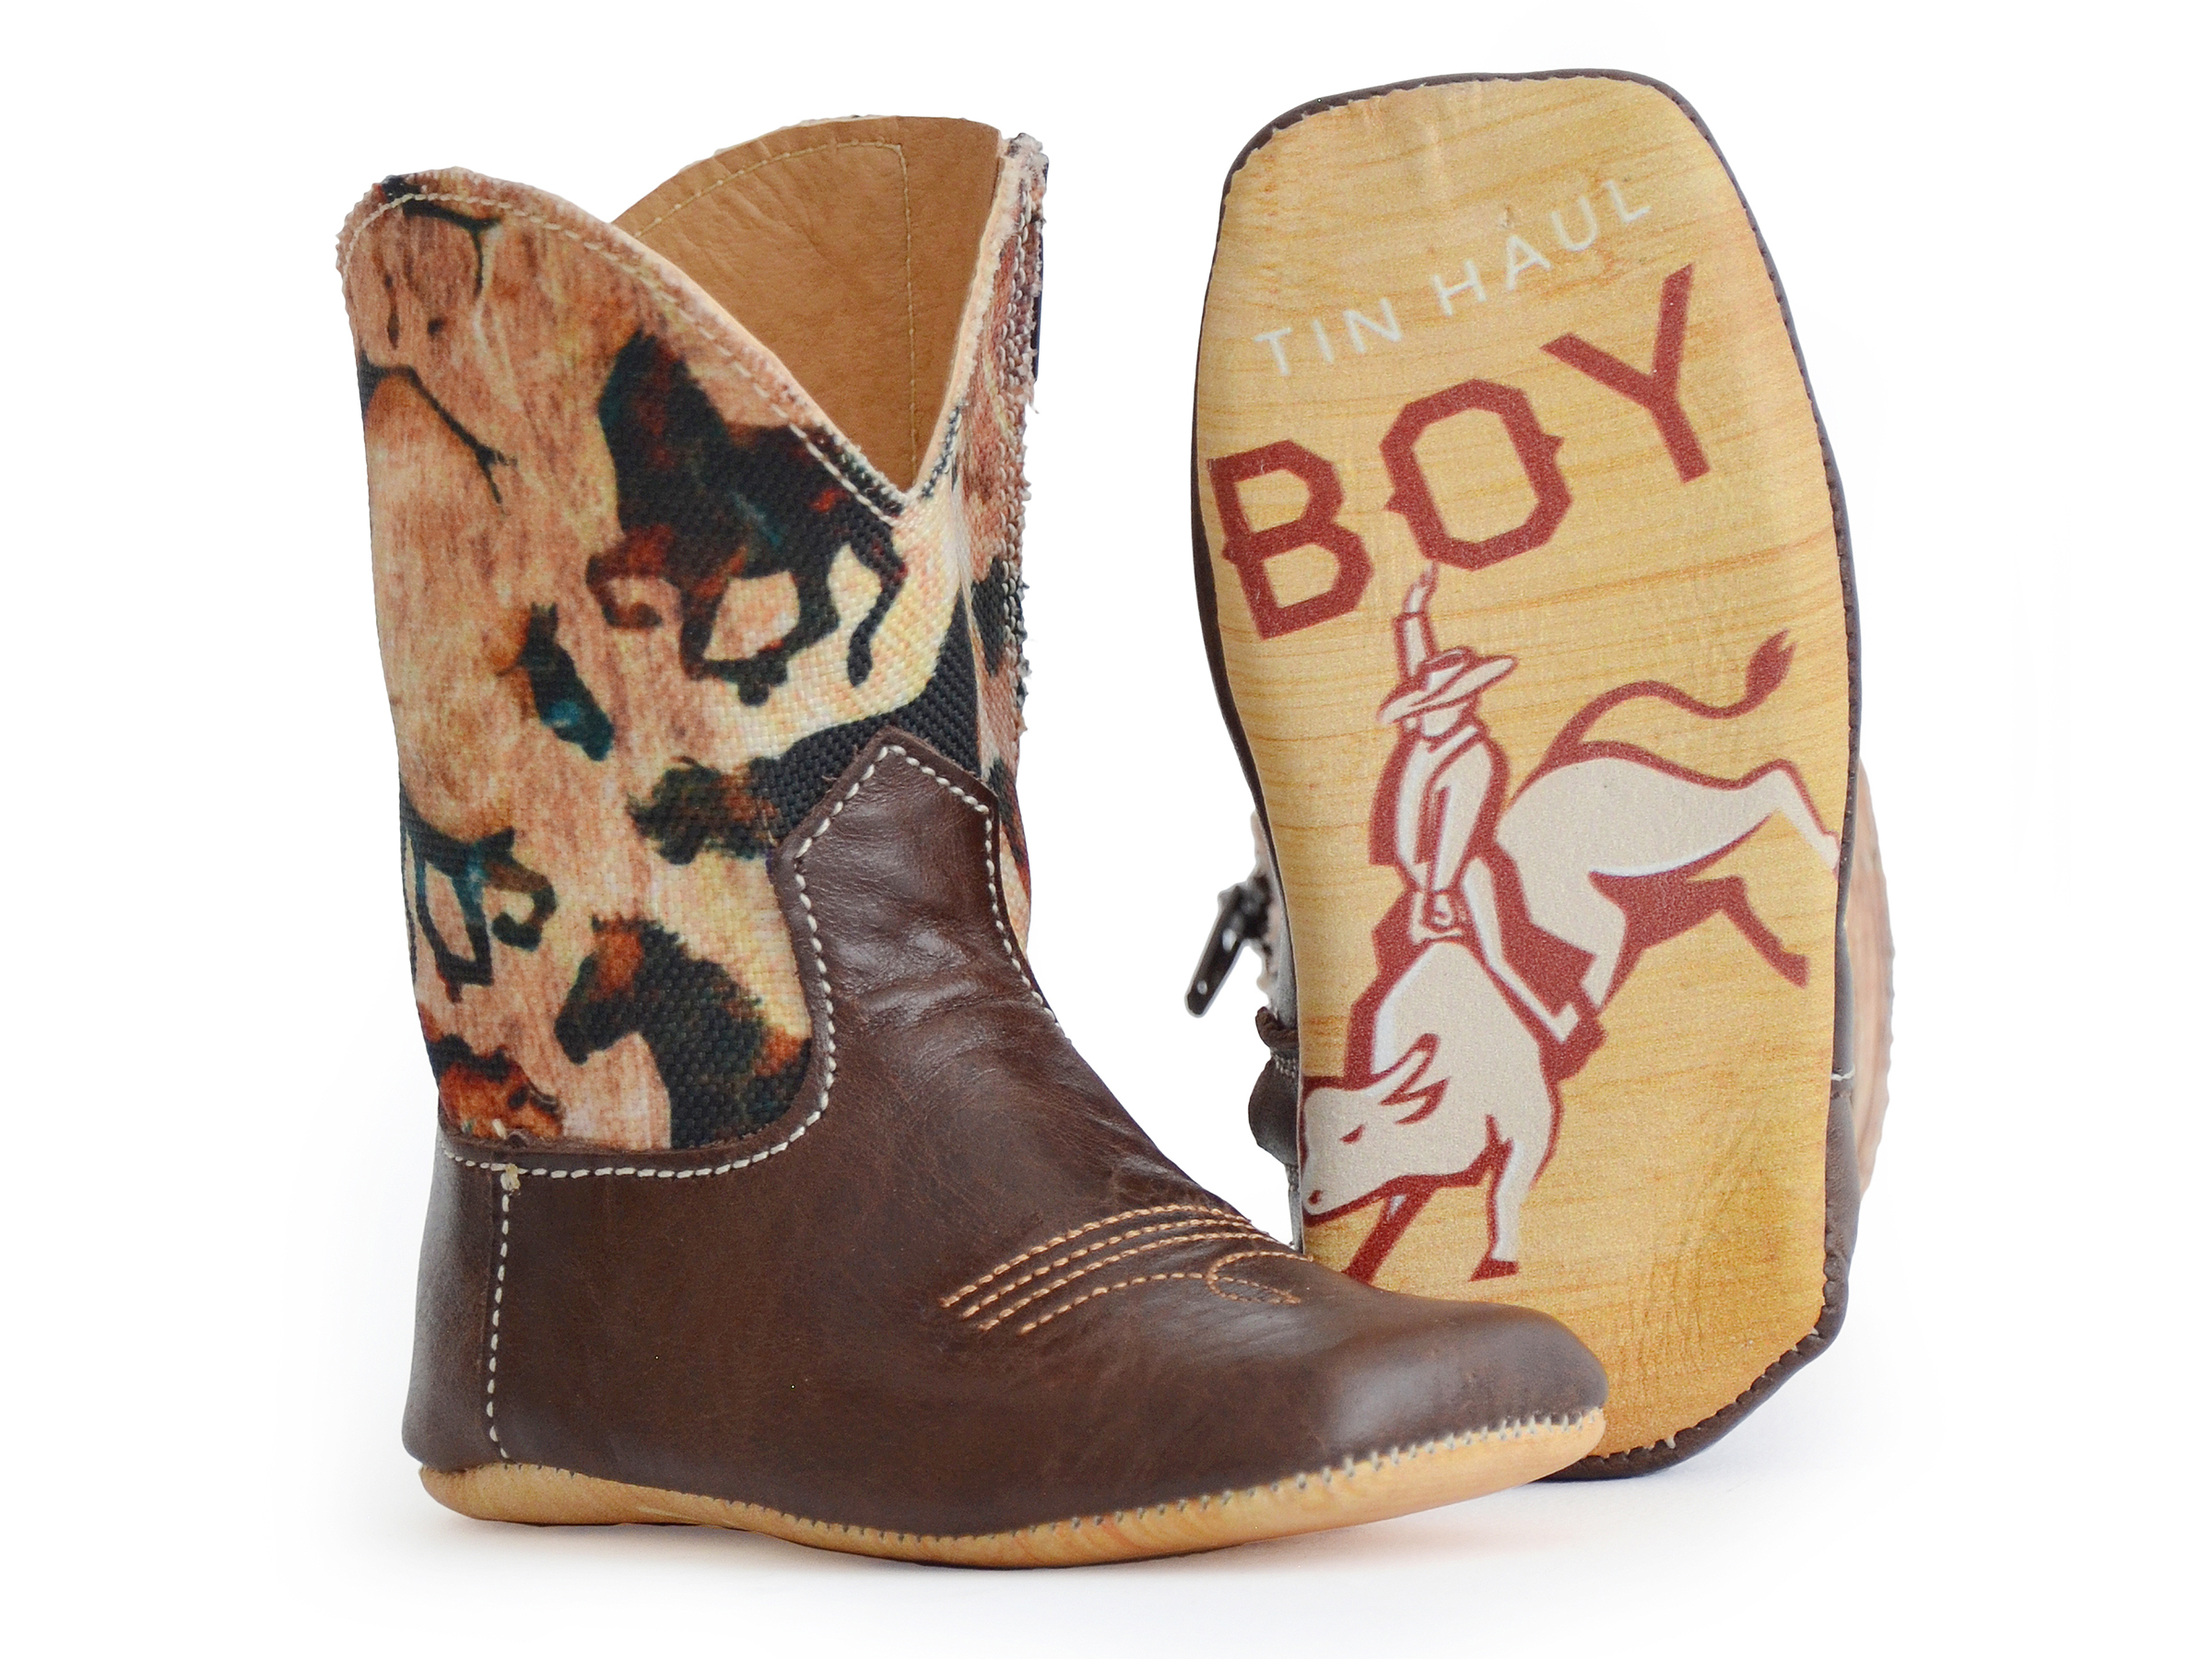 Tin Haul Infant Boys Cowboy Boot